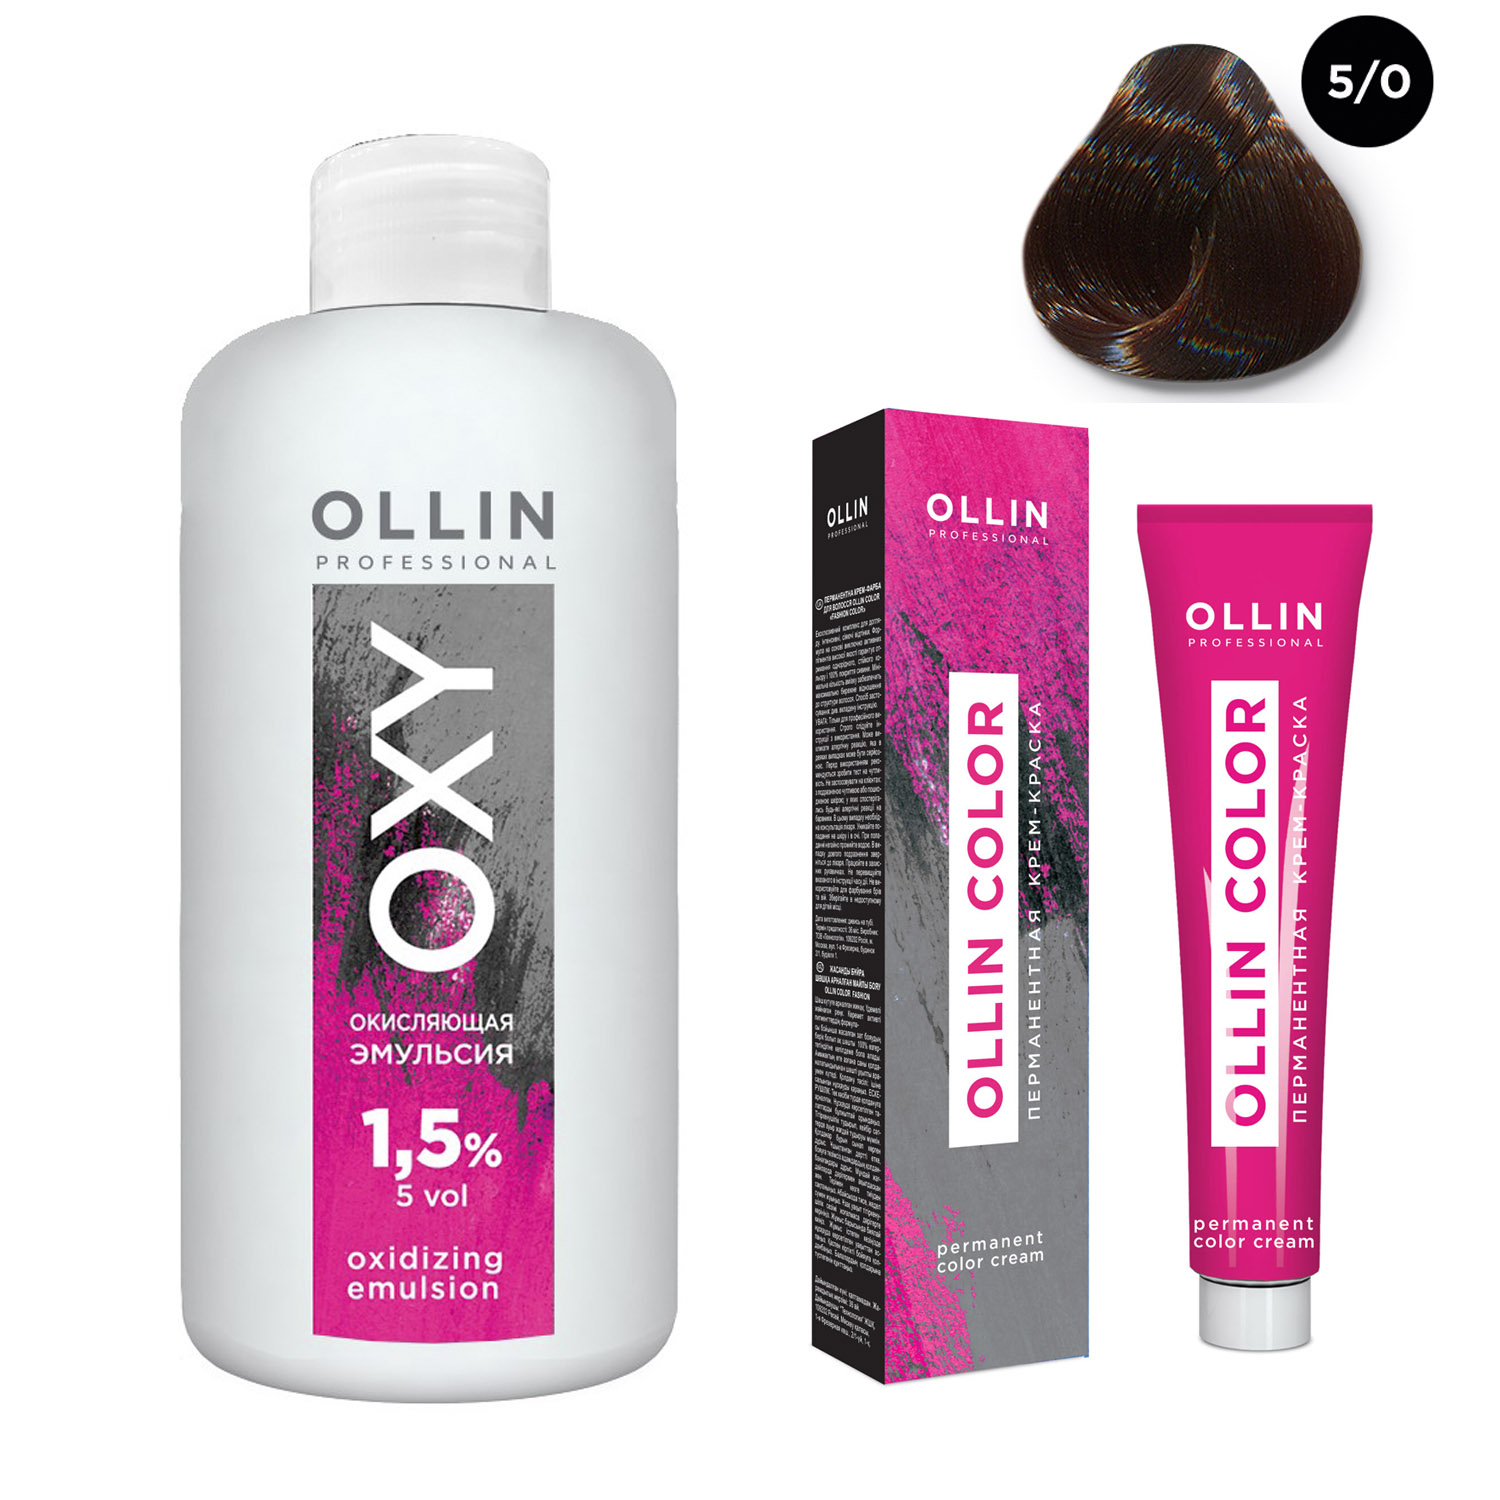 Ollin Professional Набор Перманентная крем-краска для волос Ollin Color оттенок 5/0 светлый шатен 100 мл + Окисляющая эмульсия Oxy 1,5% 150 мл (Ollin Professional, Ollin Color) цена и фото